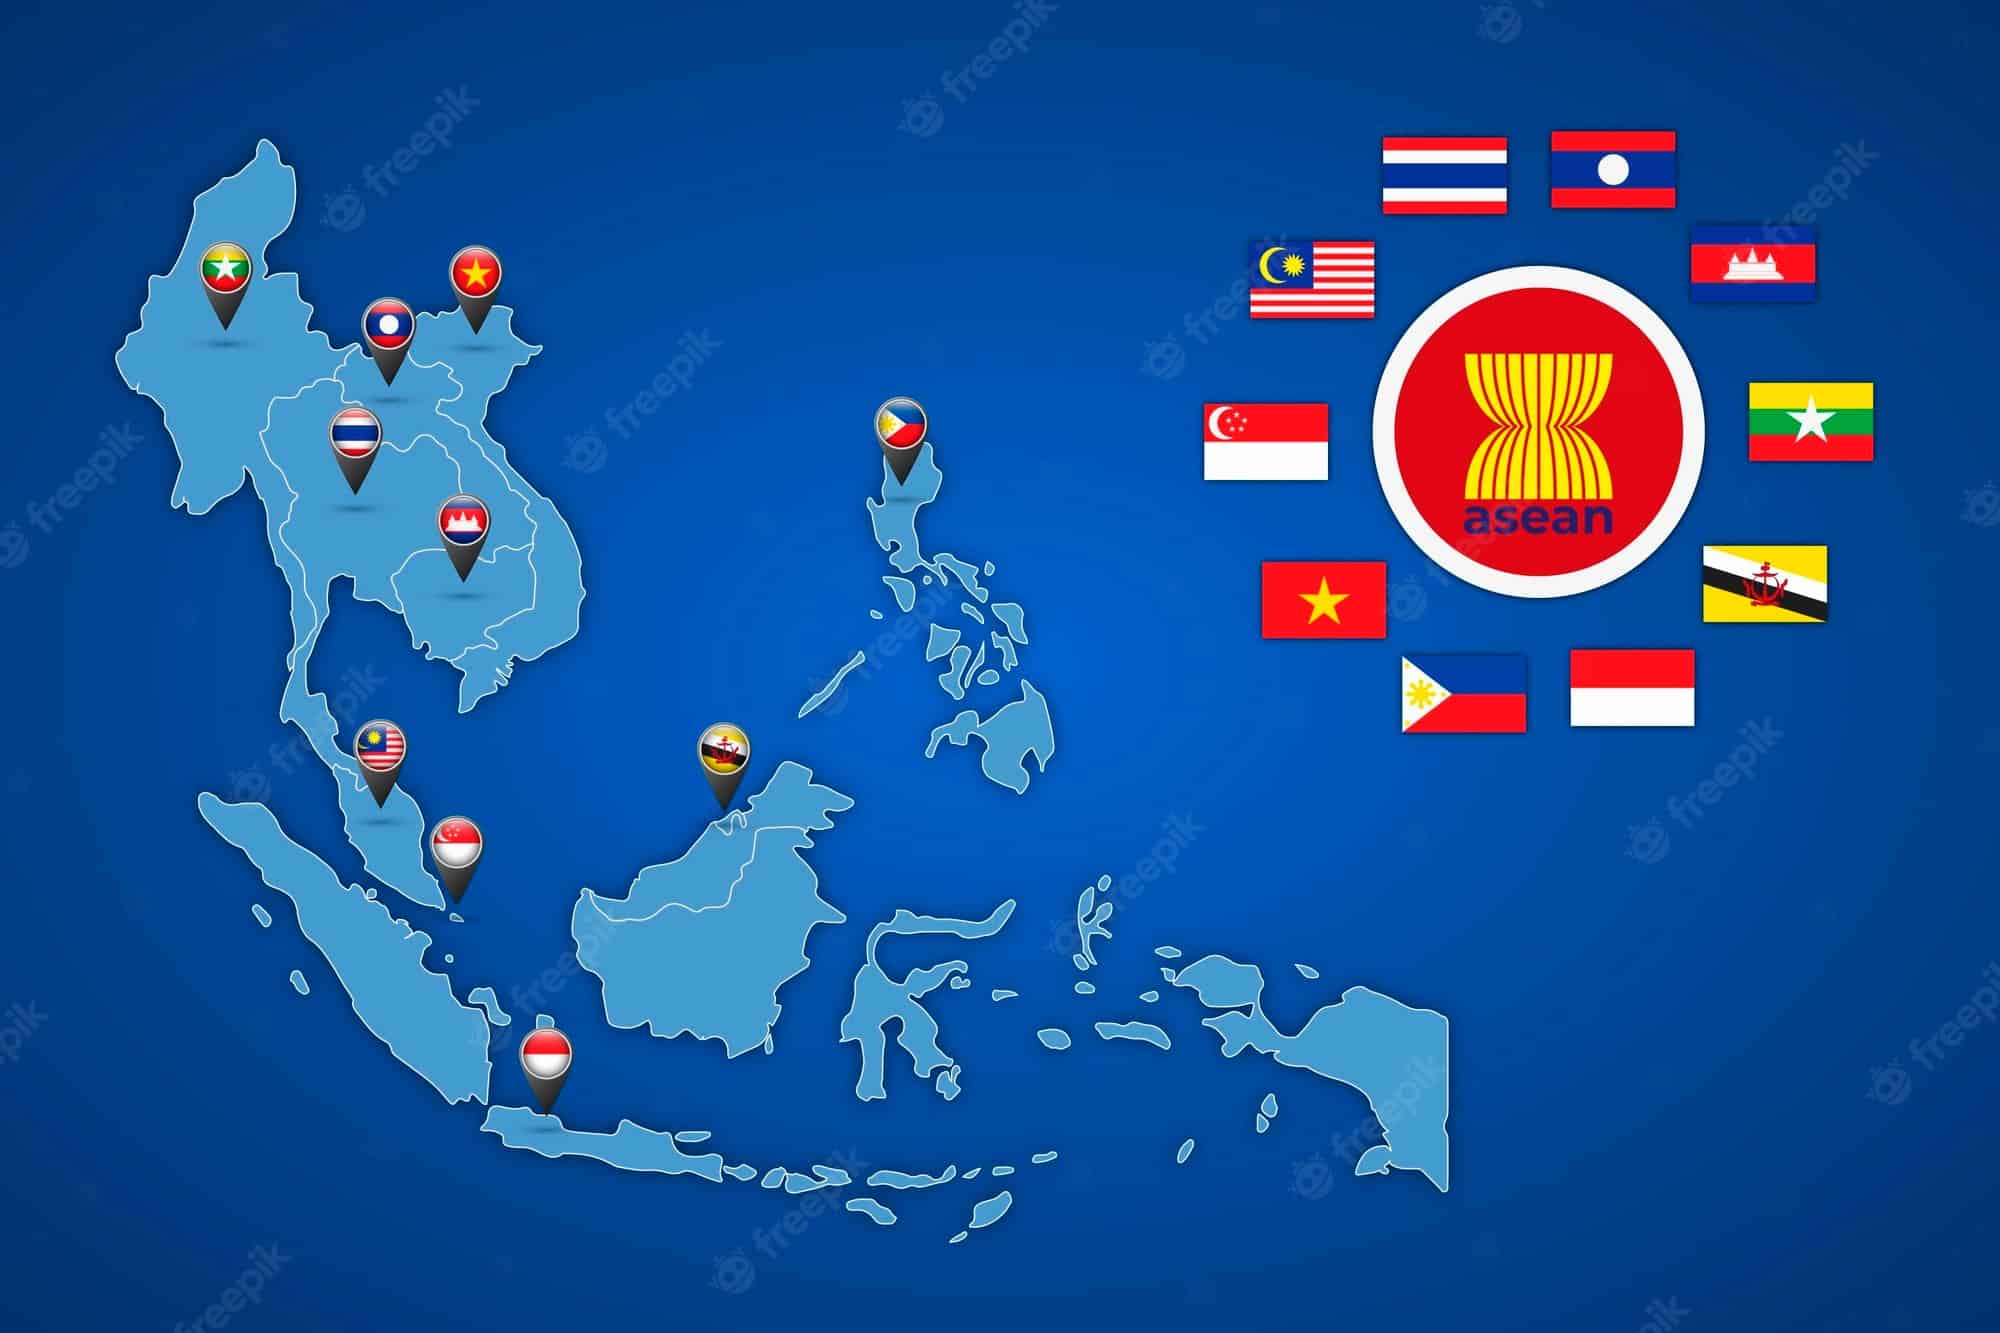 ASEAN hiện tại có bao nhiêu quốc gia thành viên?
